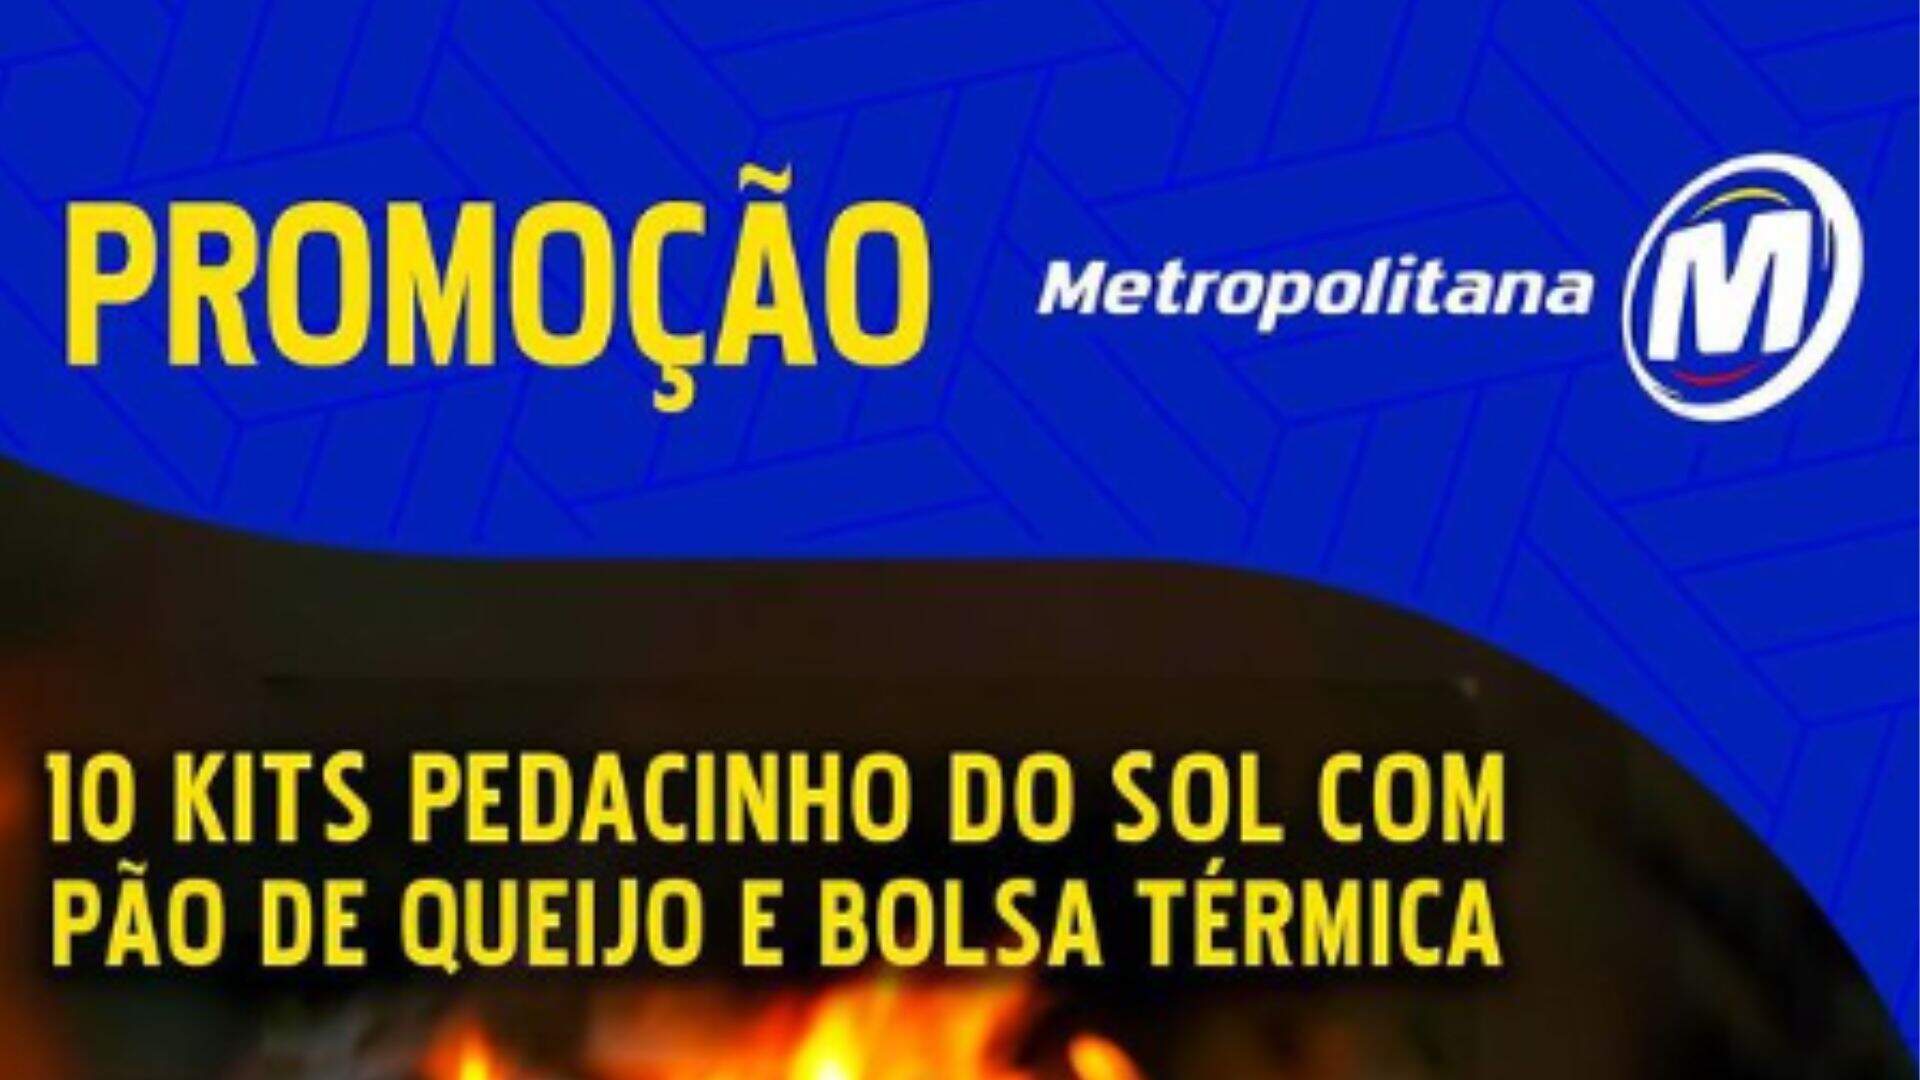 [ENCERRADA] Promoção: KIT PEDACINHO DO SOL ALIMENTOS É NA METROPOLITANA - Metropolitana FM